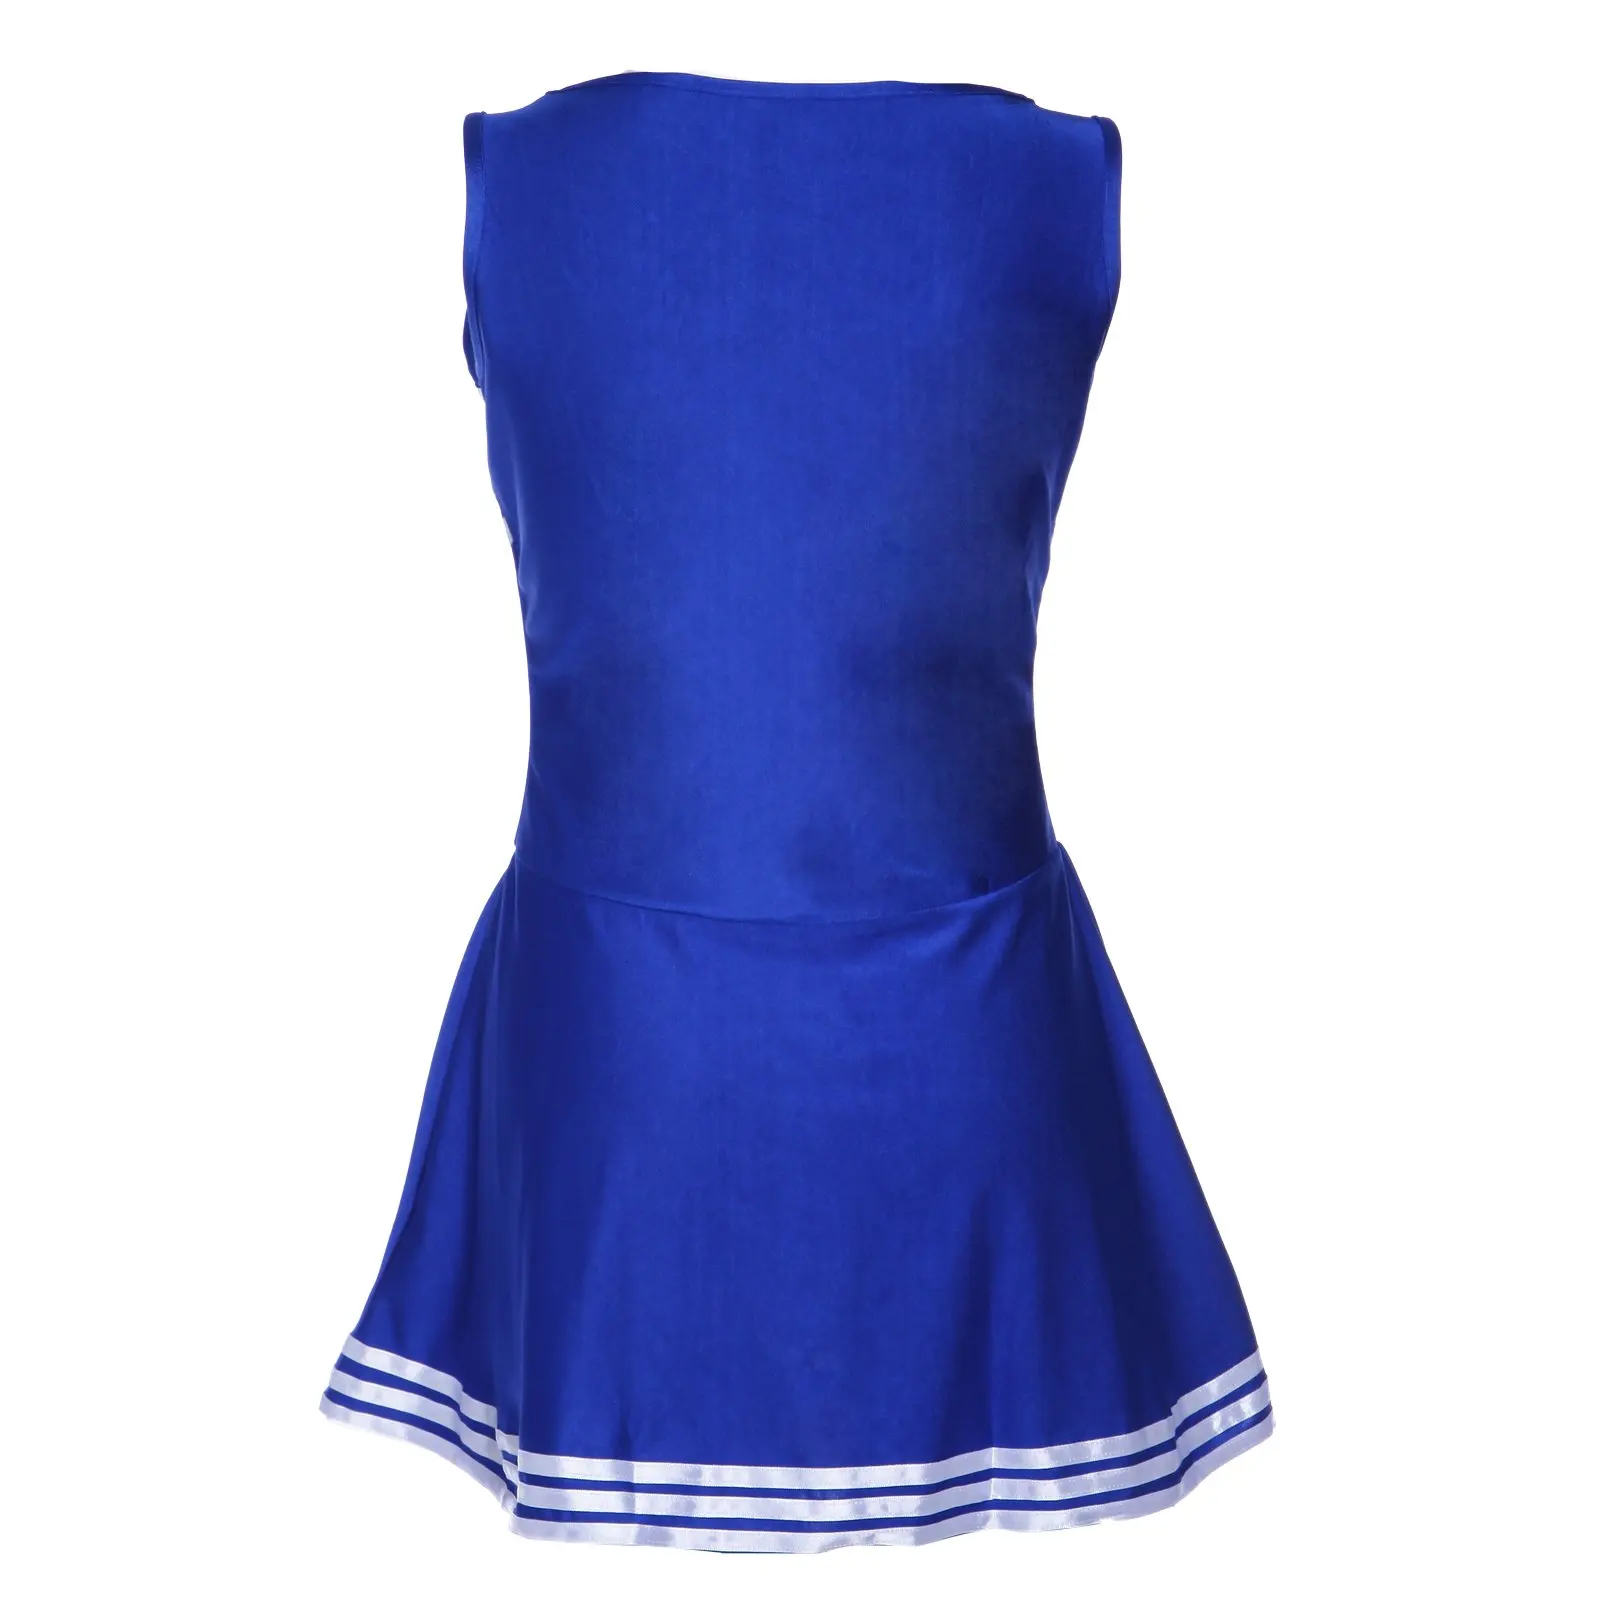 SZ-lgfm-платье на бретелях голубое нарядное платье помпон для чирлидинга помпон для девочек, вечеринка для девочек XS 14-16, Футбольная Школа